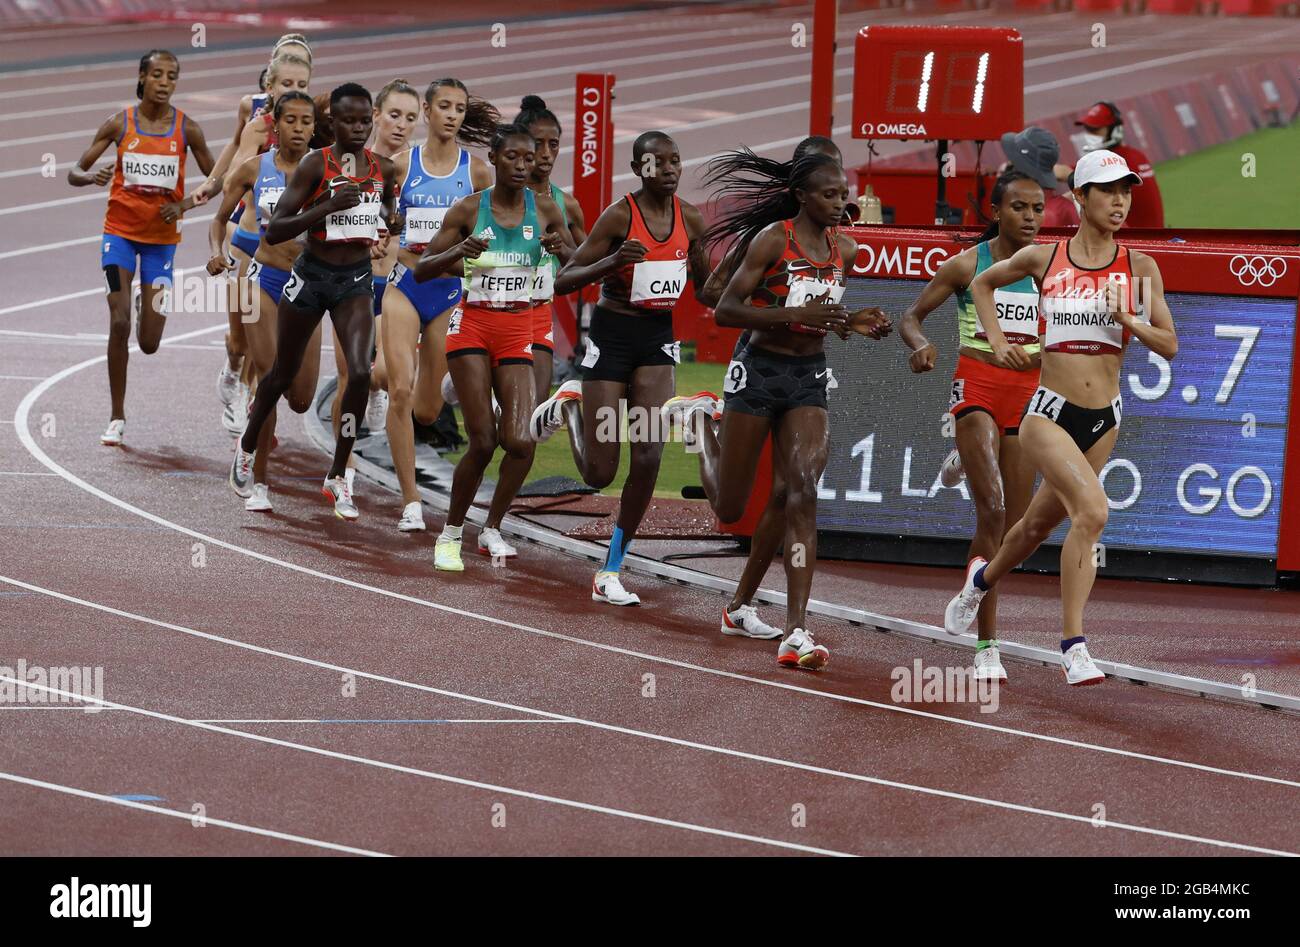 Tokyo, Japon. 02 août 2021. Les concurrents se disputant la finale féminine de 5000m au stade olympique lors des Jeux olympiques d'été de 2020 à Tokyo, au Japon, le lundi 2 août 2021. Photo par Tasos Katopodis/UPI crédit: UPI/Alay Live News Banque D'Images